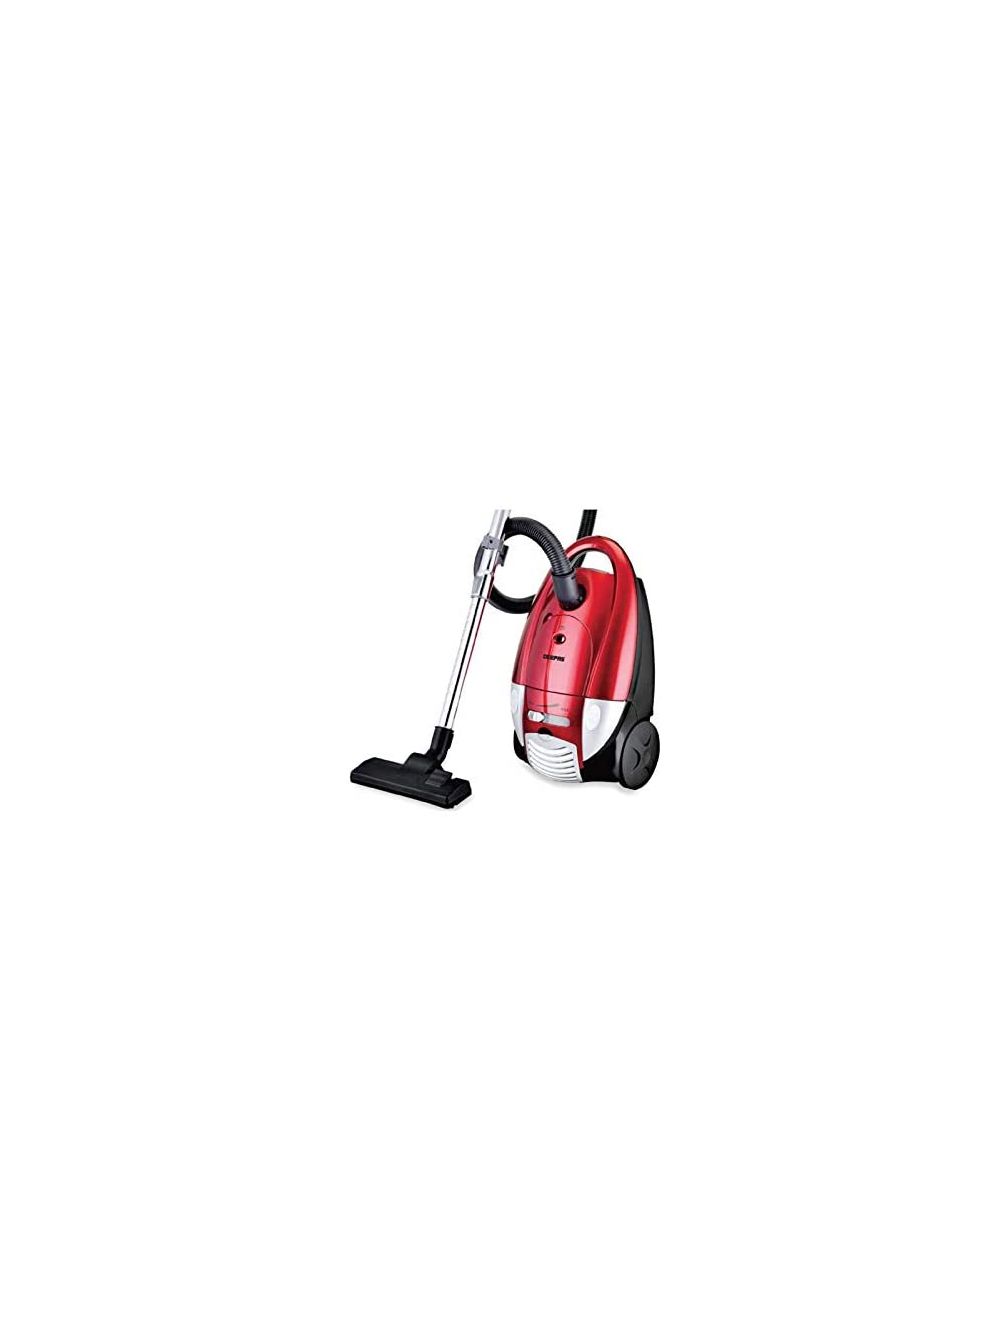 Geepas Vacuum Cleaner, Red, Gvc2591